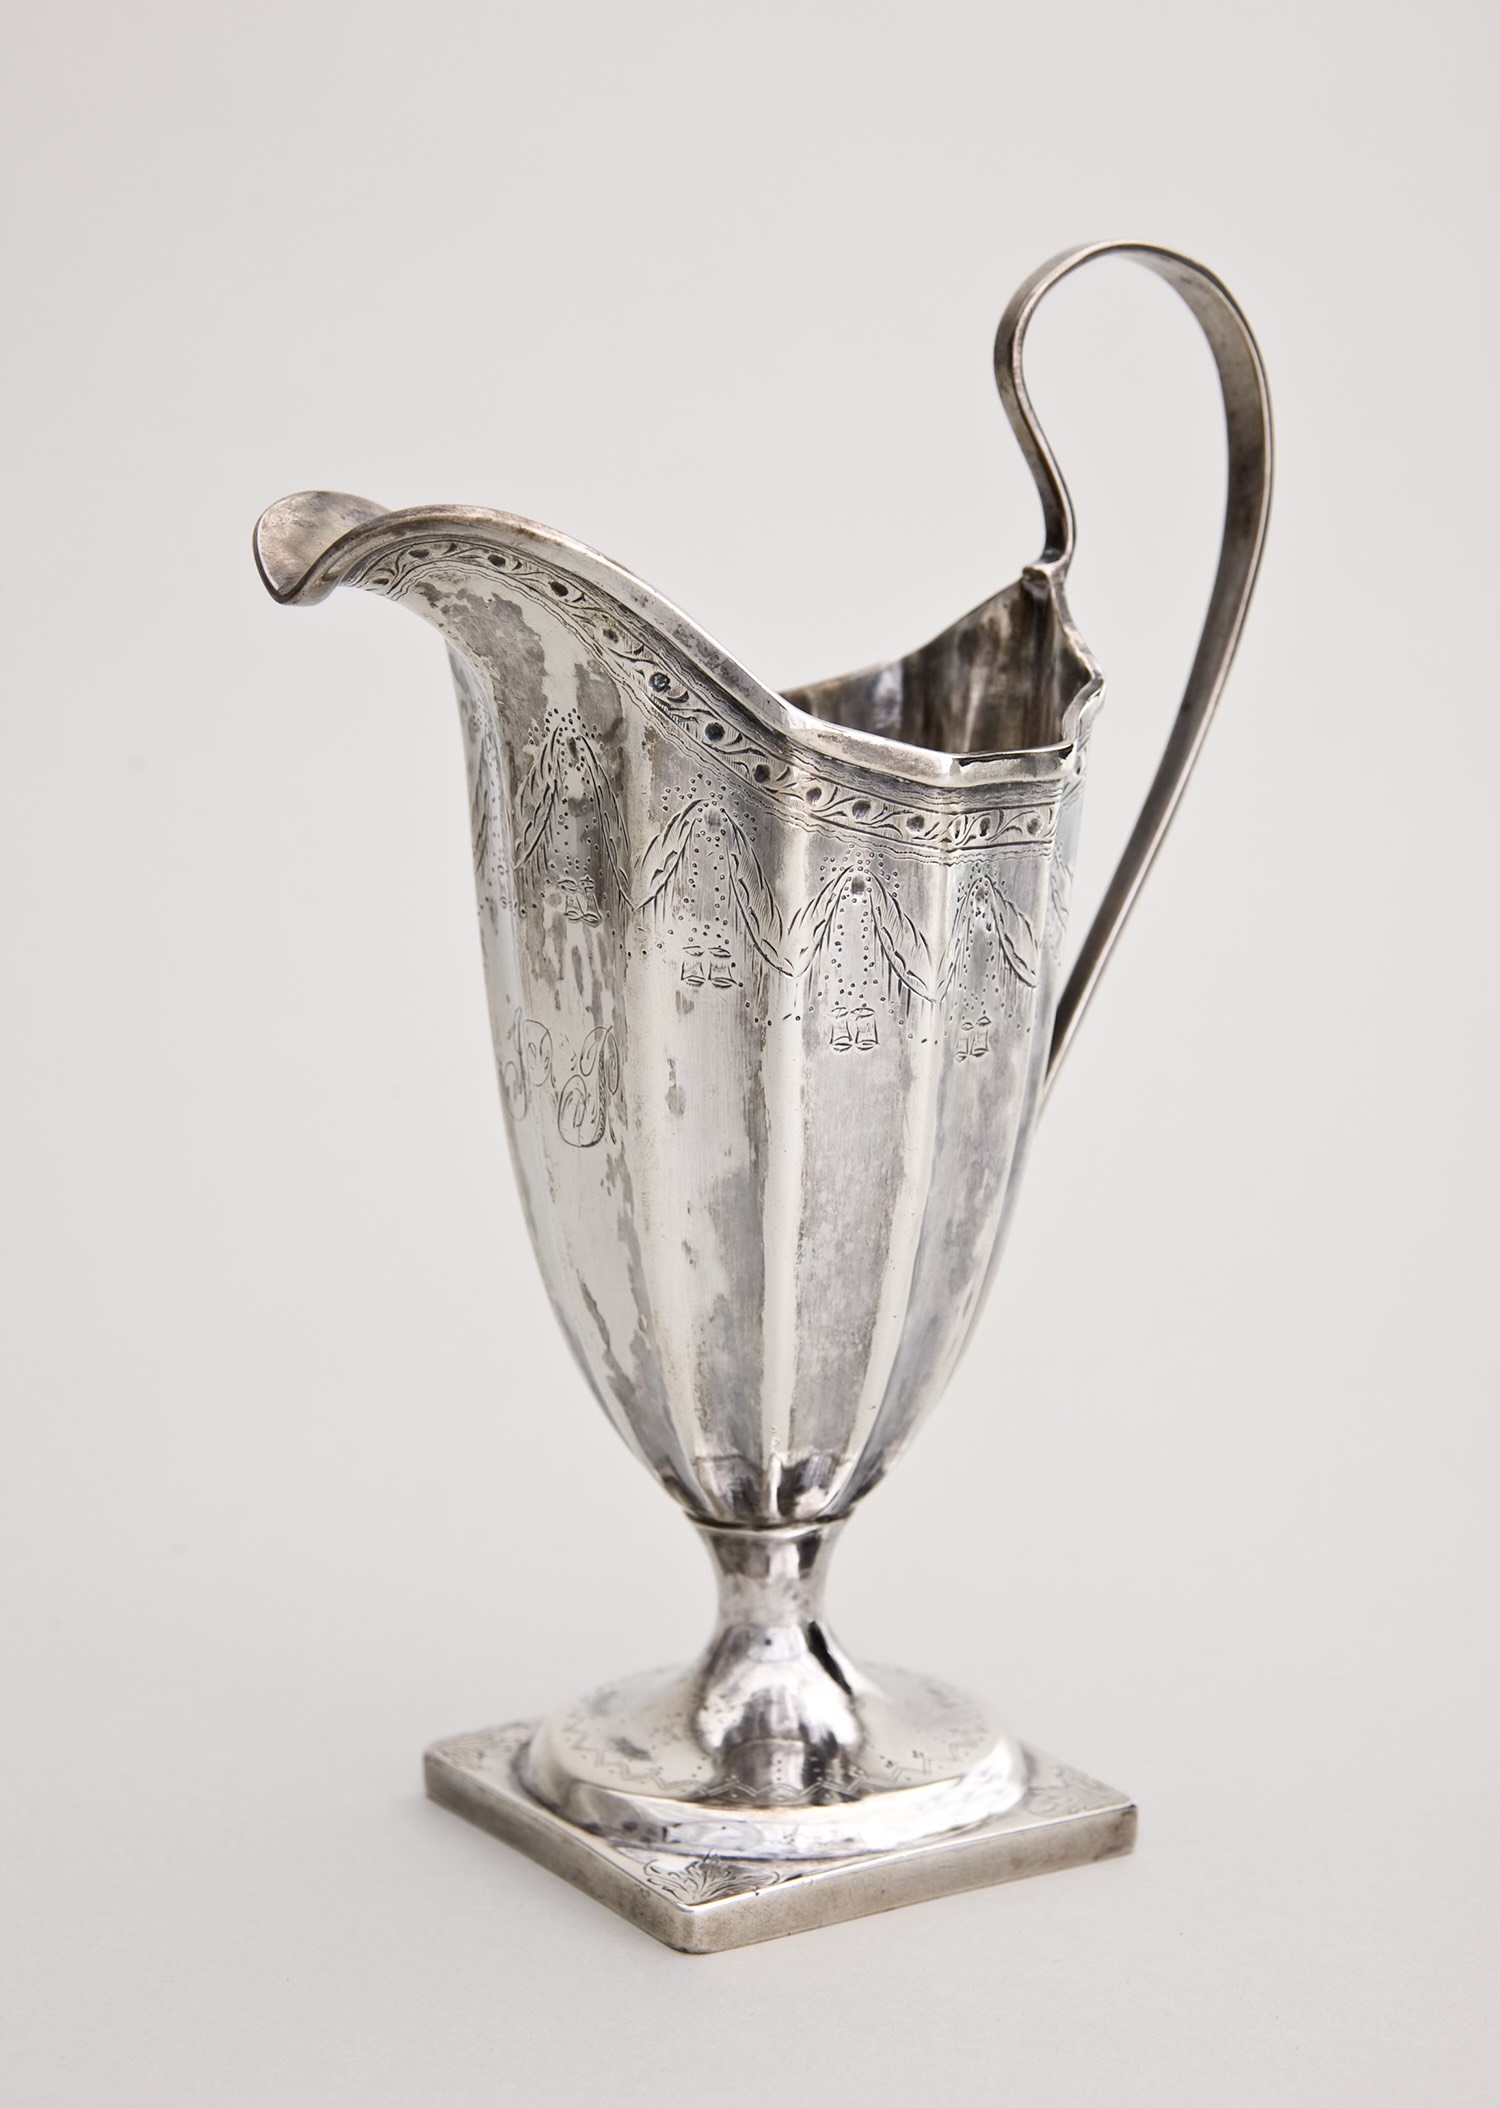 Cream jug, 1798. Sterling silver; Paul Revere, American, 1734-1818; H. 7 in. (MET-001-90). The Charles Hosmer Morse Museum of American Art. (The Charles Hosmer Morse Museum of American Art)